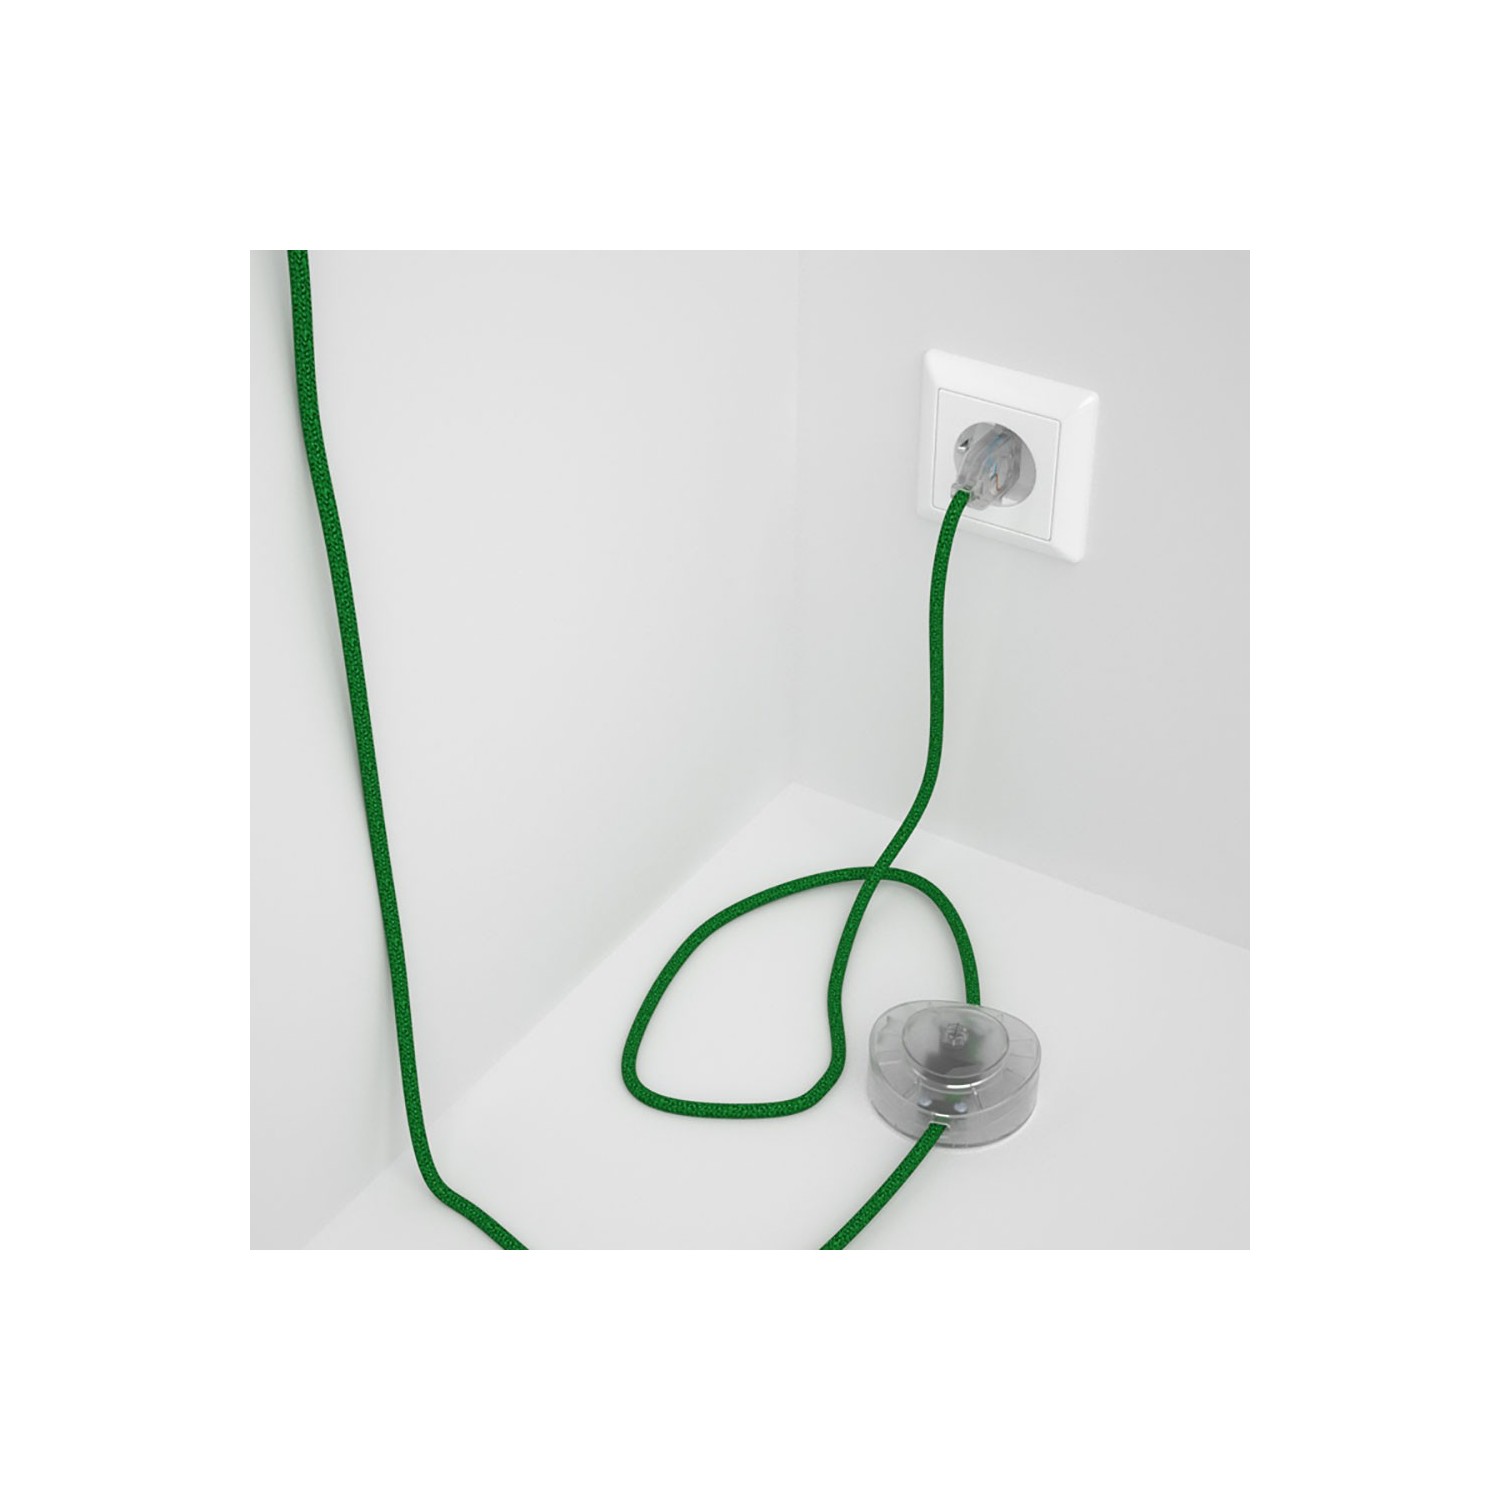 Strijkijzersnoer set RL06 groen viscose 3 m. voor staande lamp met stekker en voetschakelaar.